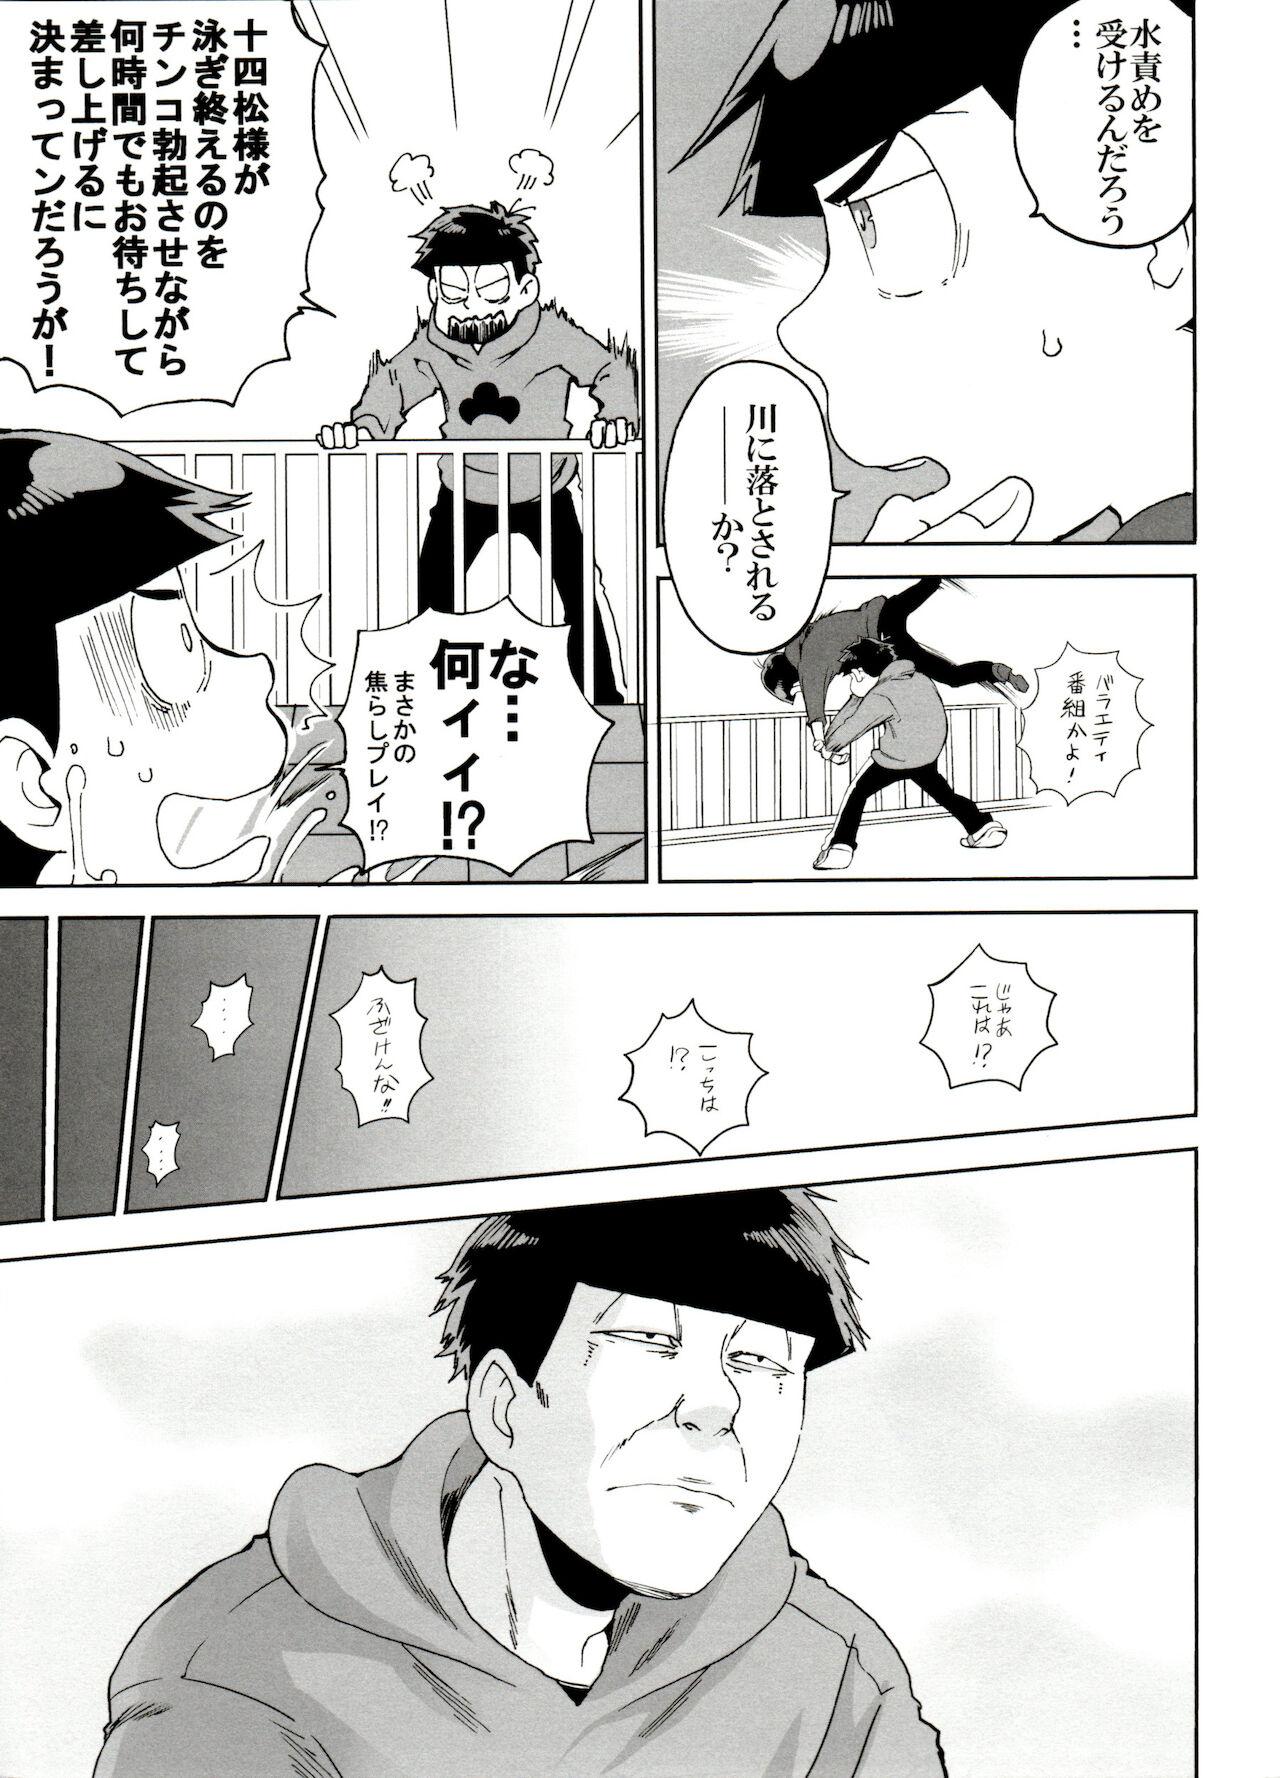 Hung SM Matsu 2 - Osomatsu san Banging - Page 11